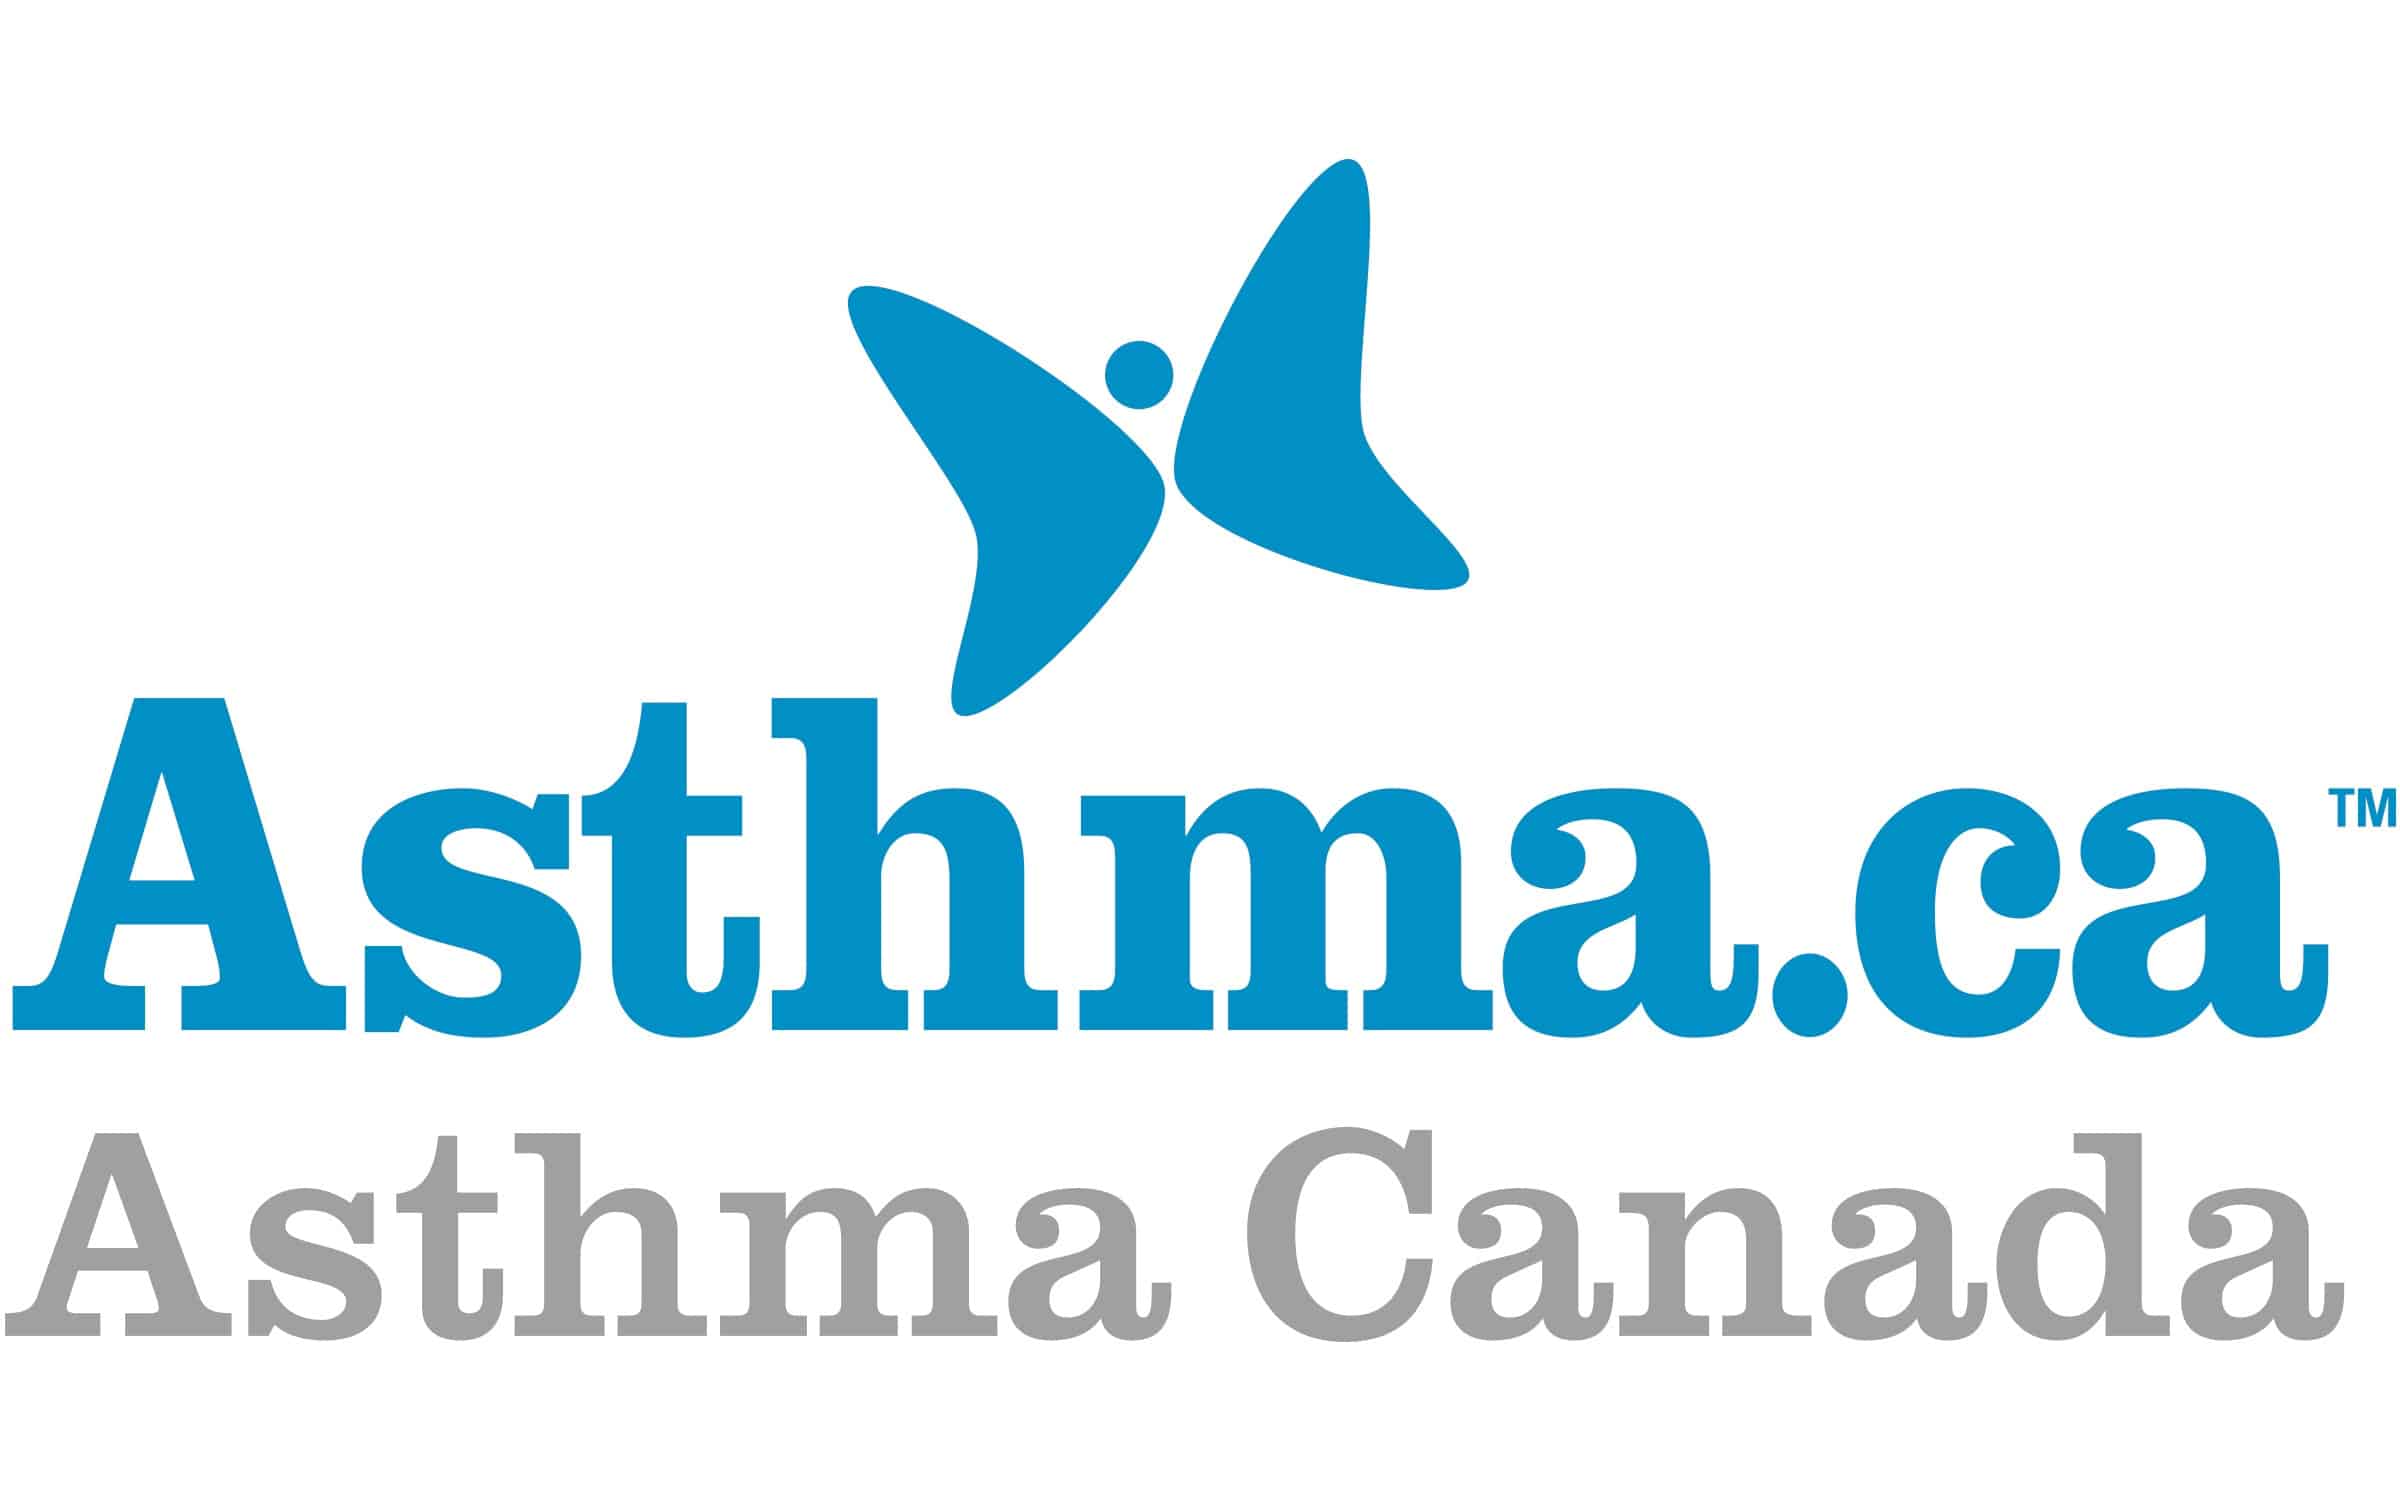 (c) Asthma.ca